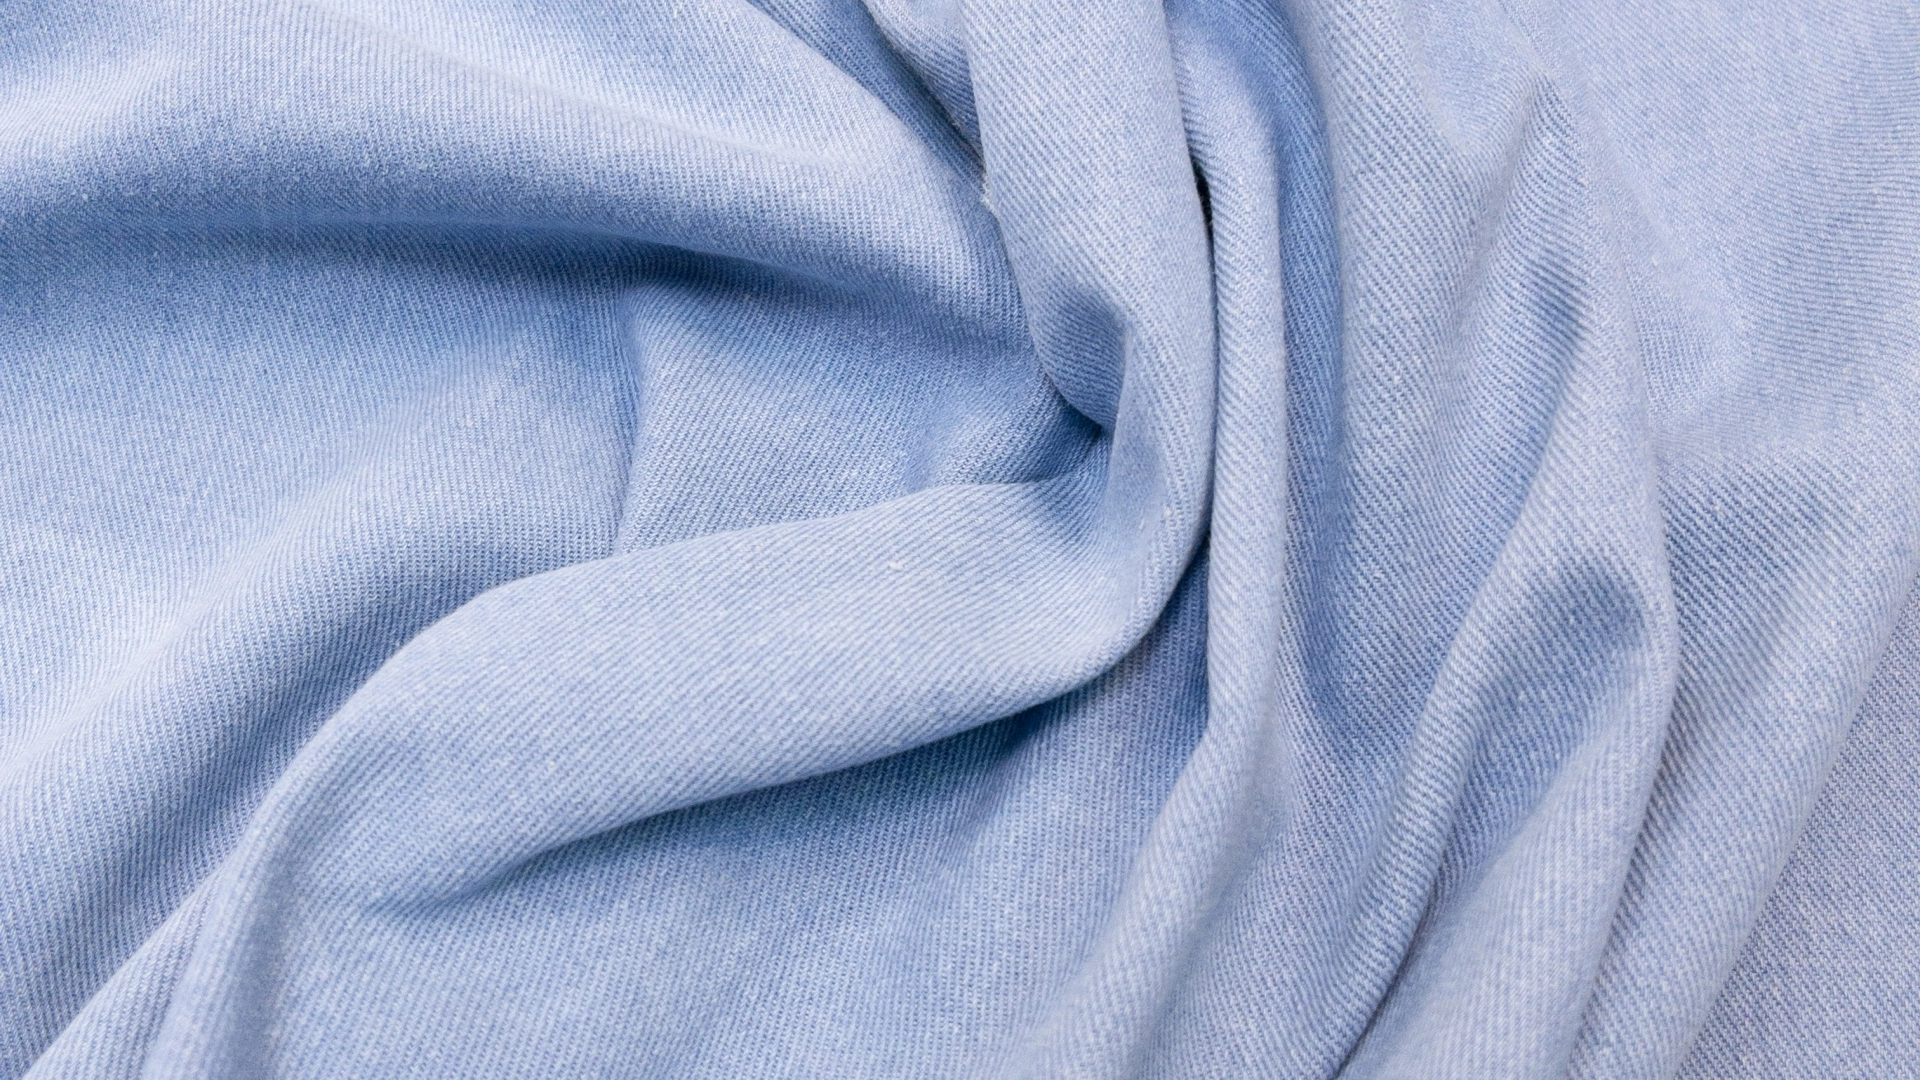 Голубая вареная джинса, плотность 450 гр метр погонный. Настоящий деним, который можно дополнительно обработать жесткой щеткой с моющим средством и высветлить изделие фрагментами.